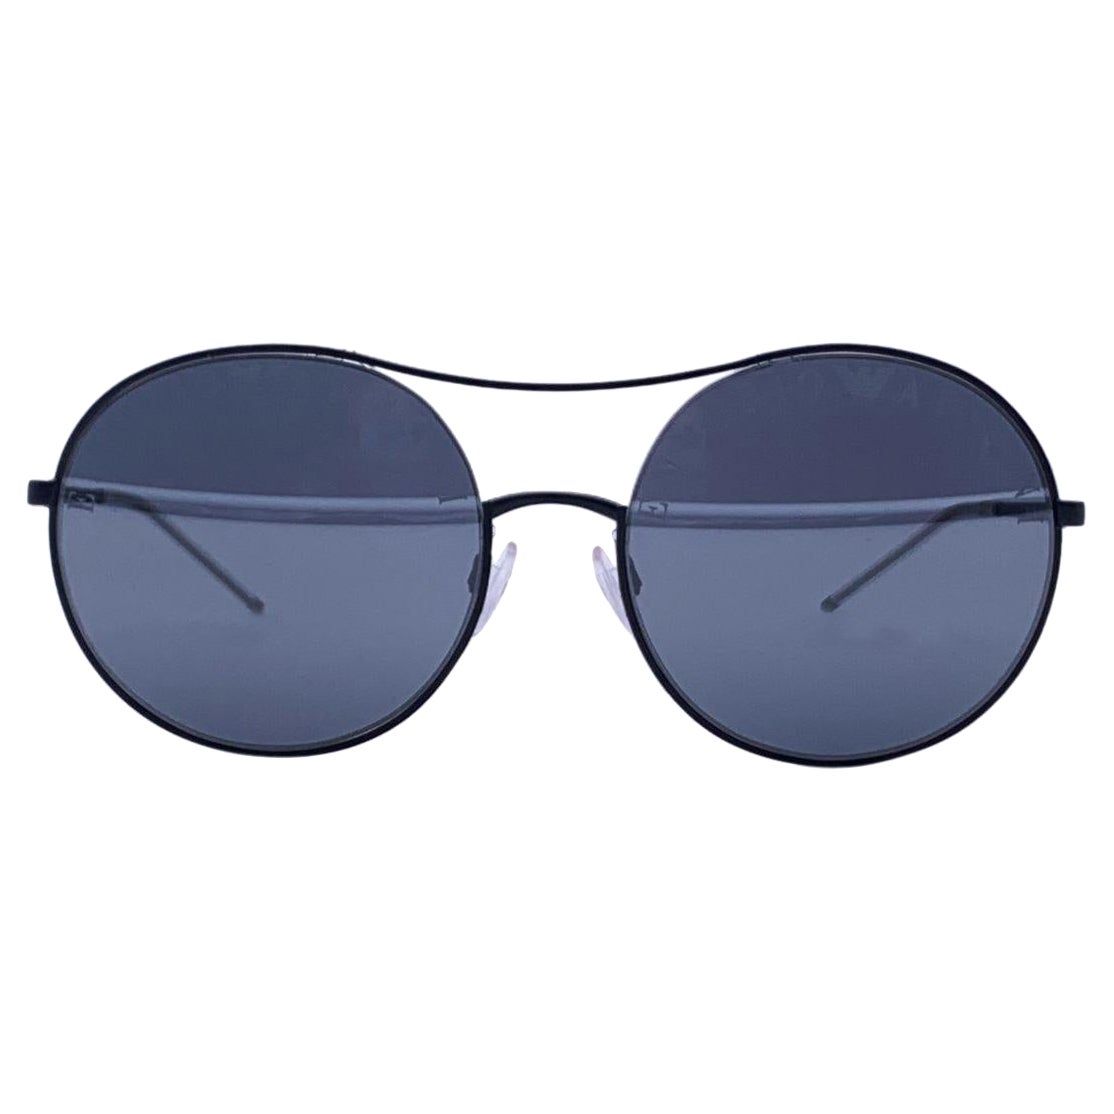 Emporio Armani Mint Women Black Sunglasses EA2081 30016G56 56-18-139 mm For Sale